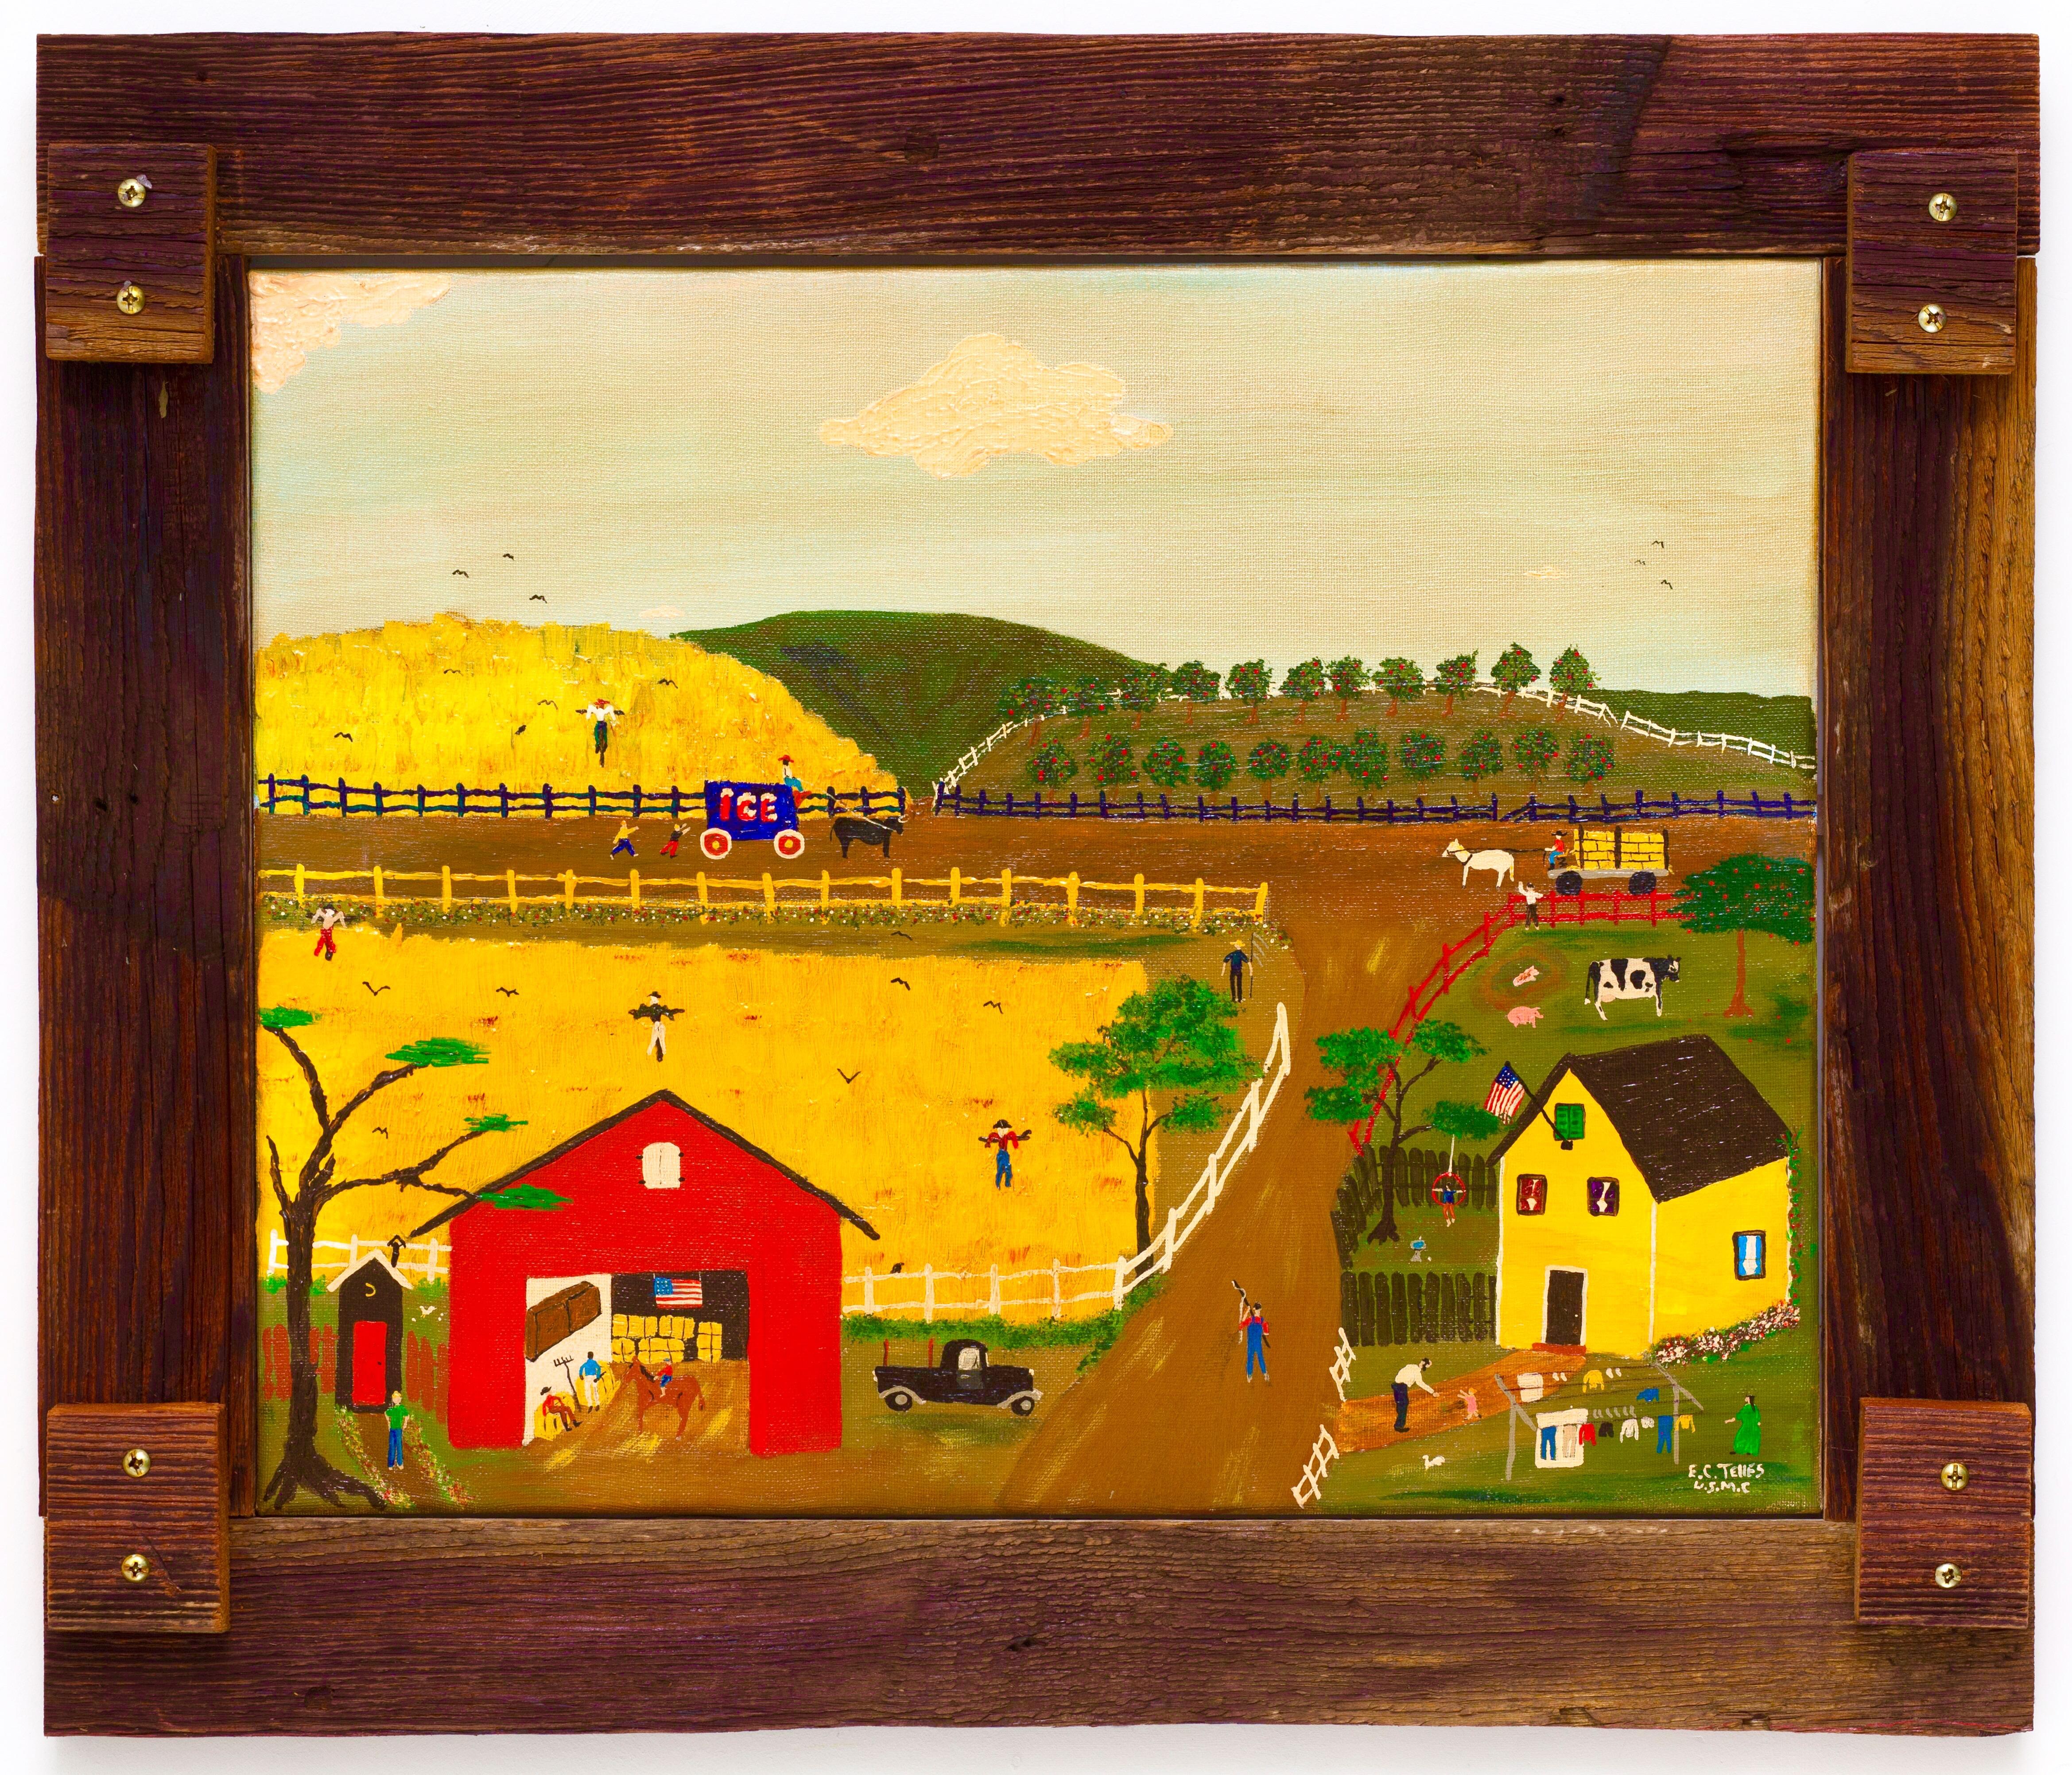 Elias Telles Landscape Painting - "Summer Time"  Farm scene, Folk Art/Naive/Primitive Landscape by Self-Taught